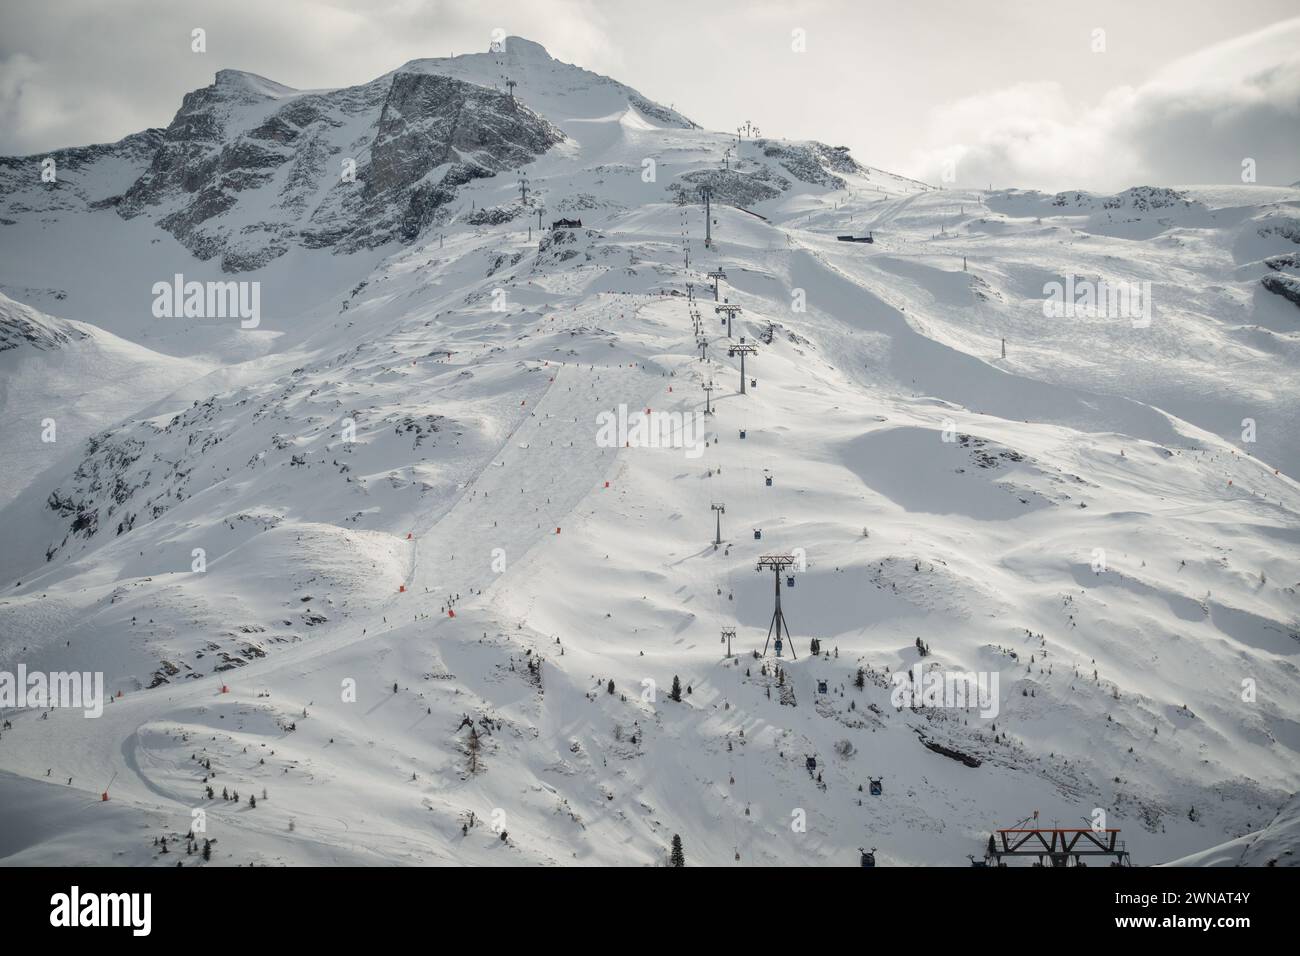 Piste de ski et le sommet d'une grande montagne, Hintertux, Autriche Banque D'Images